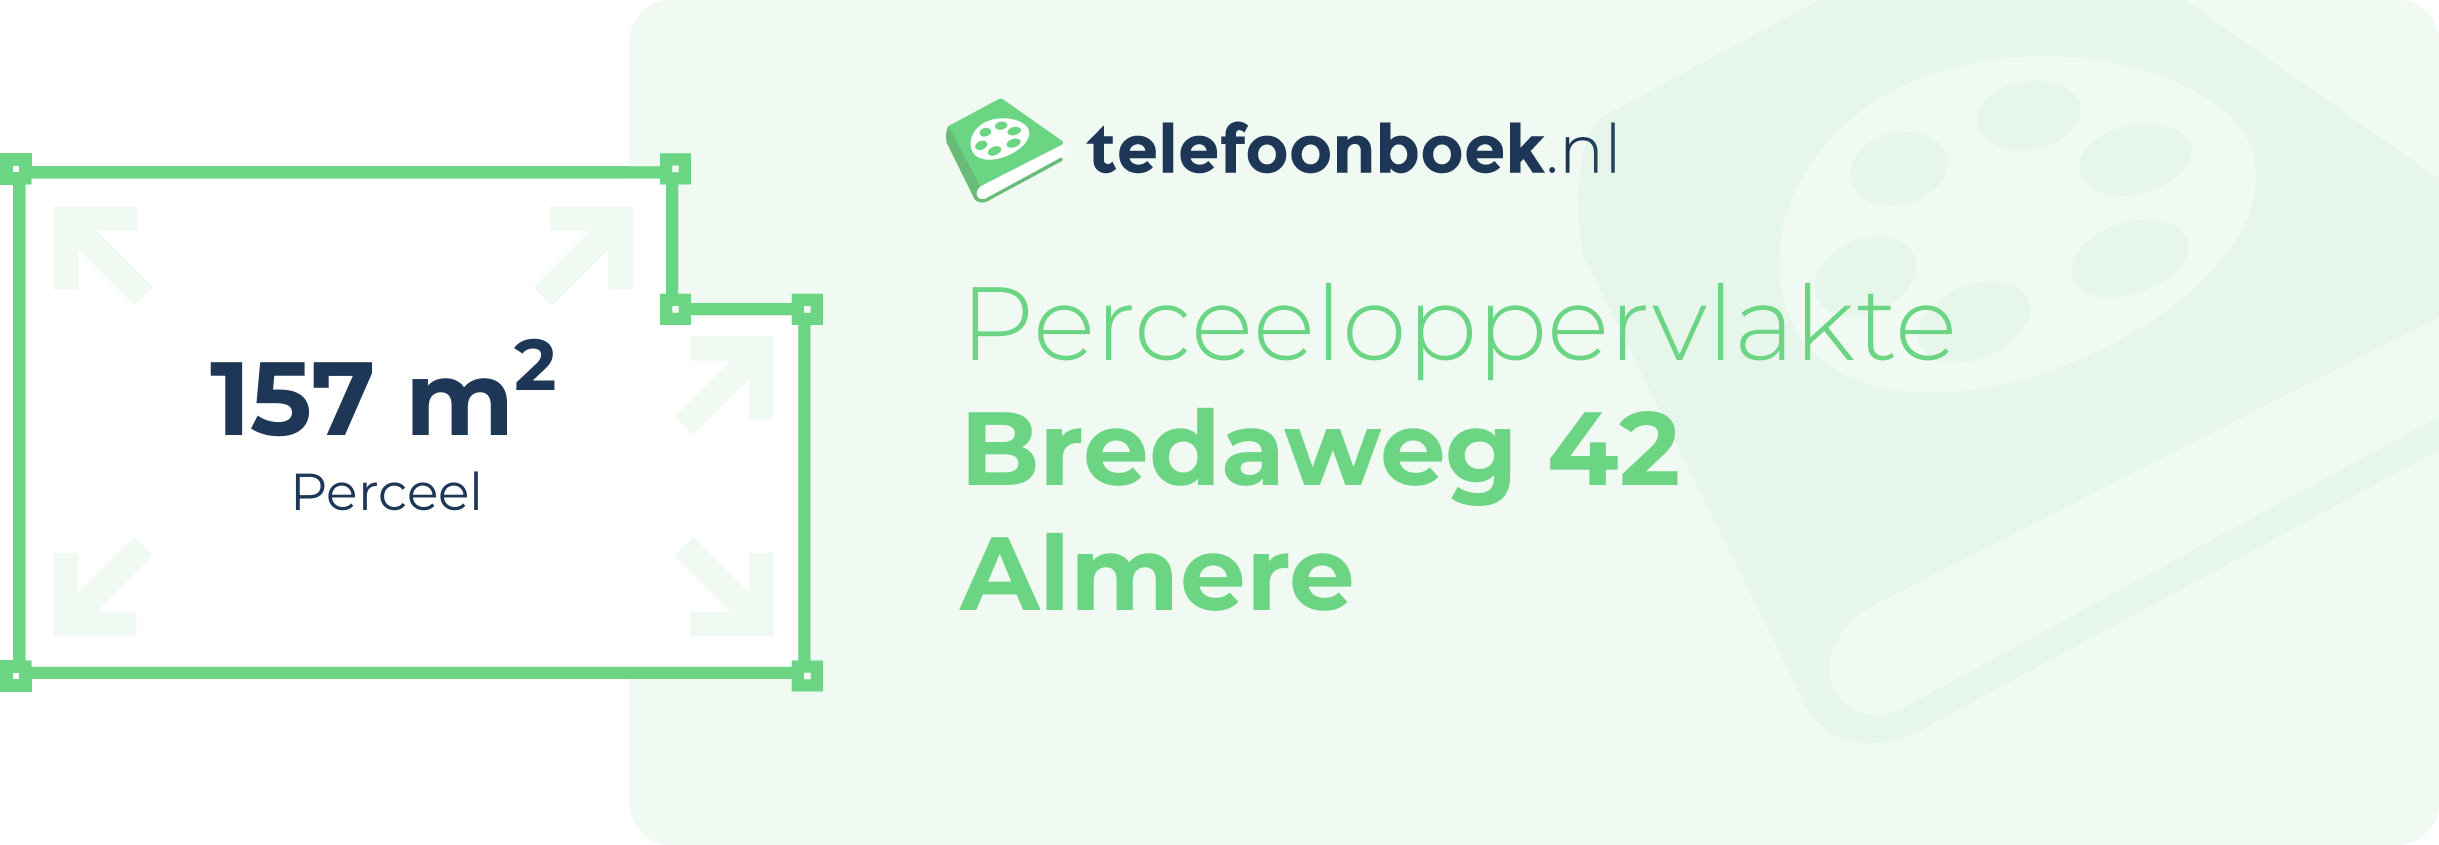 Perceeloppervlakte Bredaweg 42 Almere